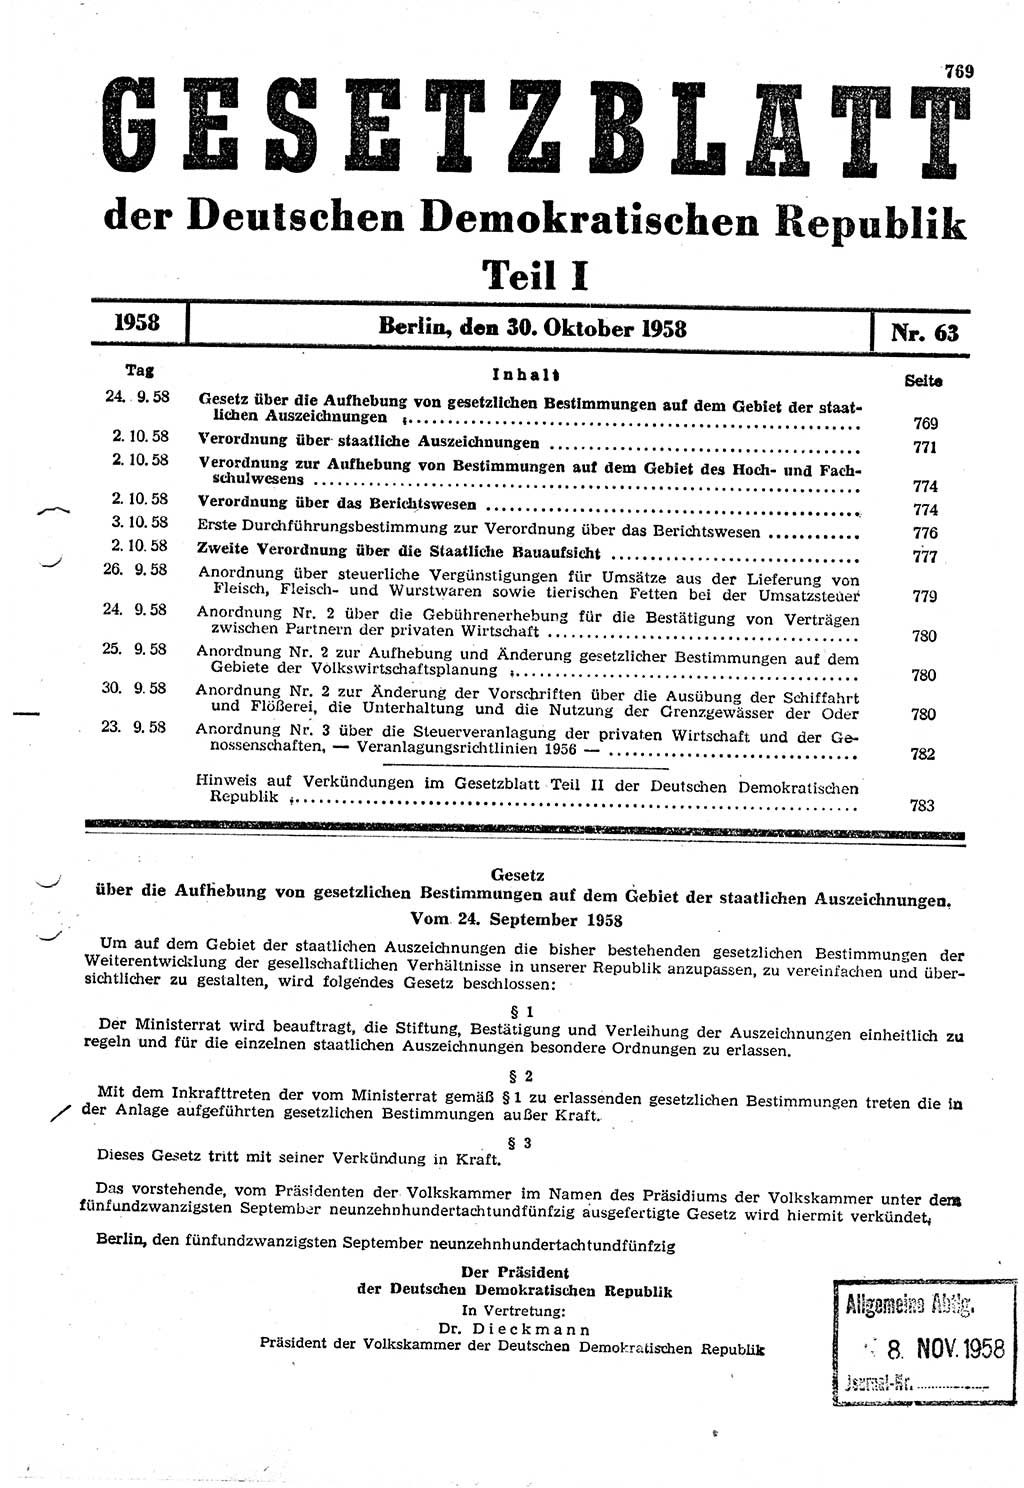 Gesetzblatt (GBl.) der Deutschen Demokratischen Republik (DDR) Teil Ⅰ 1958, Seite 769 (GBl. DDR Ⅰ 1958, S. 769)